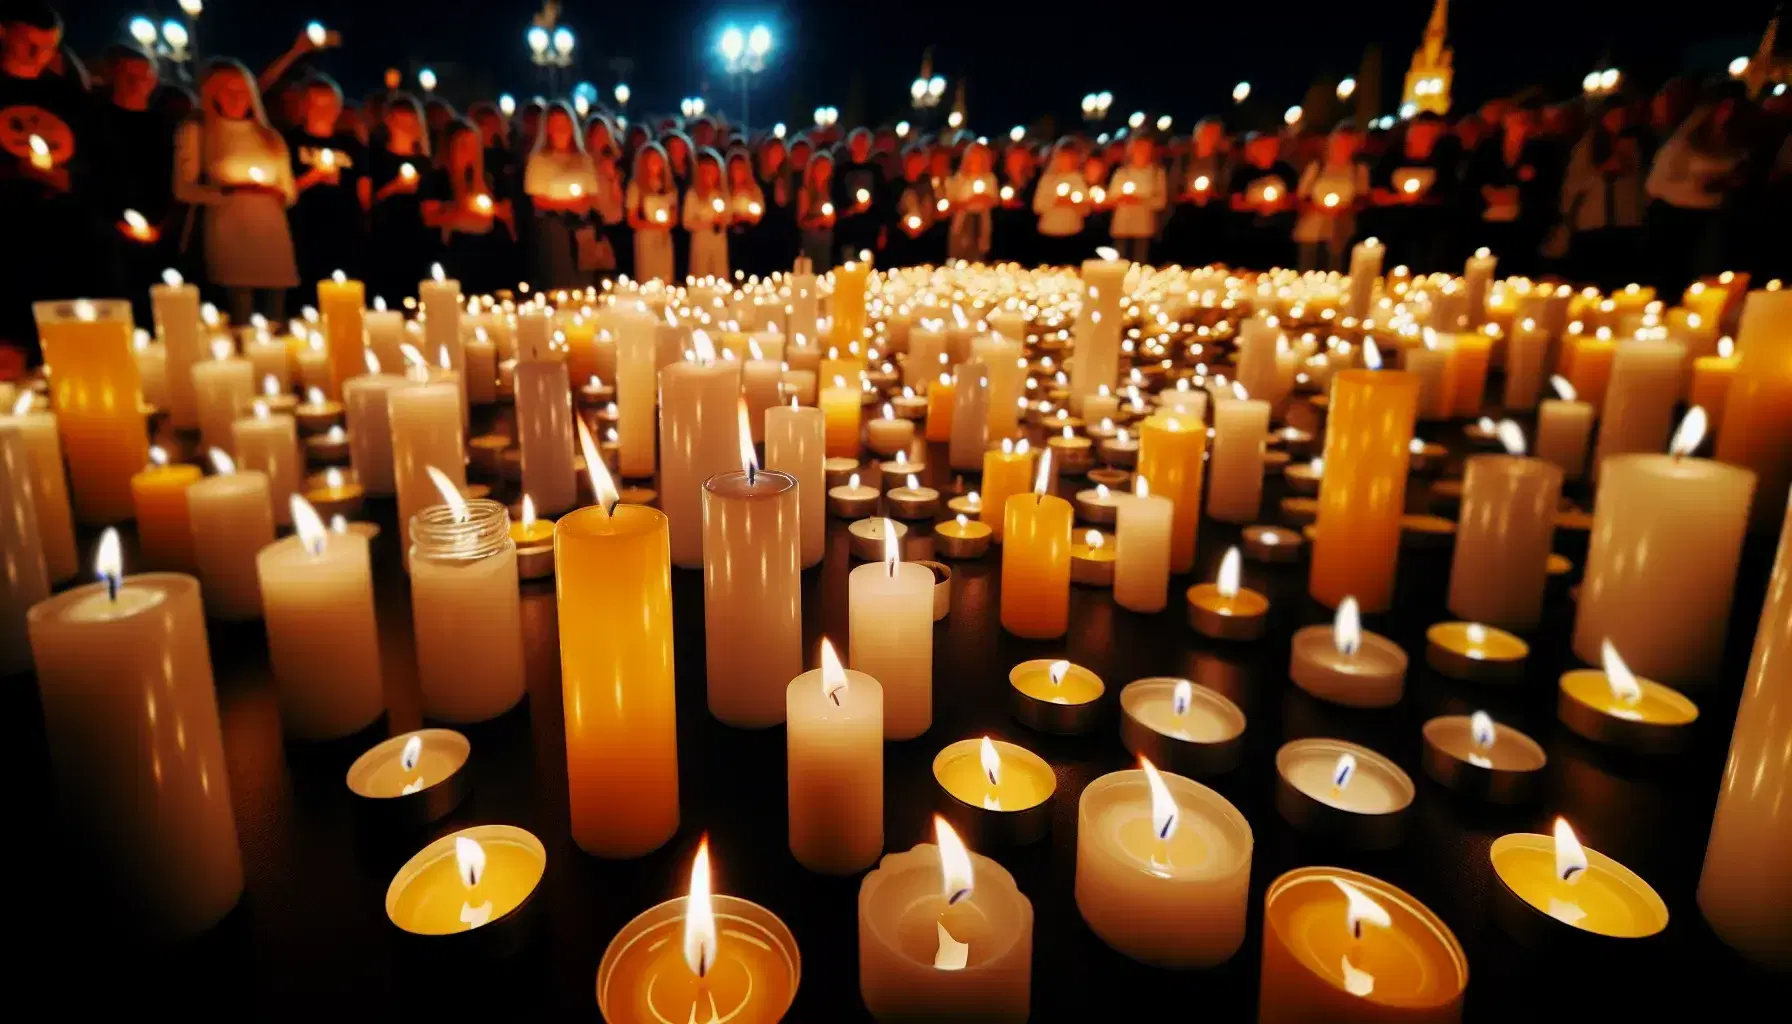 Velas encendidas con llamas amarillo-anaranjadas sobre superficie oscura en vigilia nocturna, con personas desenfocadas sosteniendo velas en el fondo.